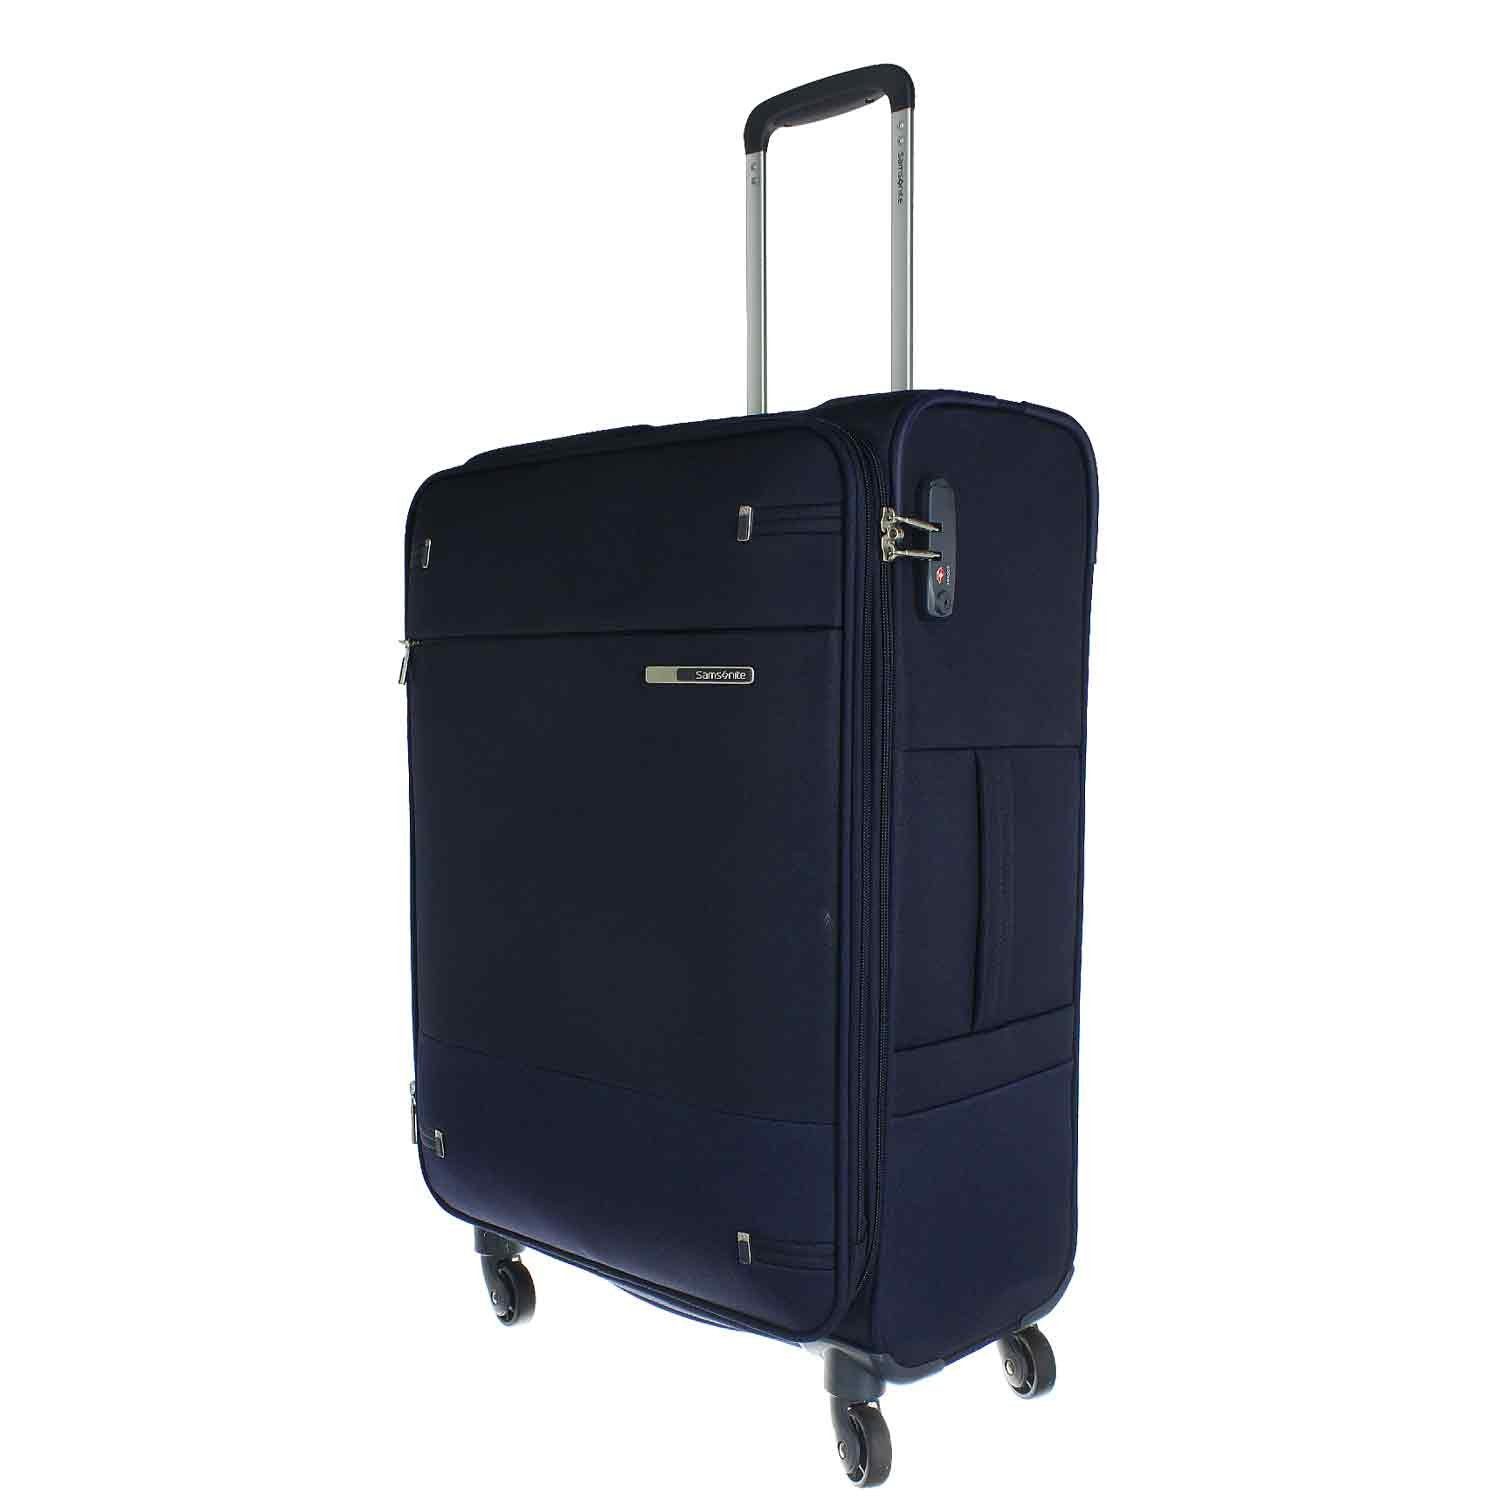 Samsonite Koffer & Reisegepäck online kaufen | OTTO